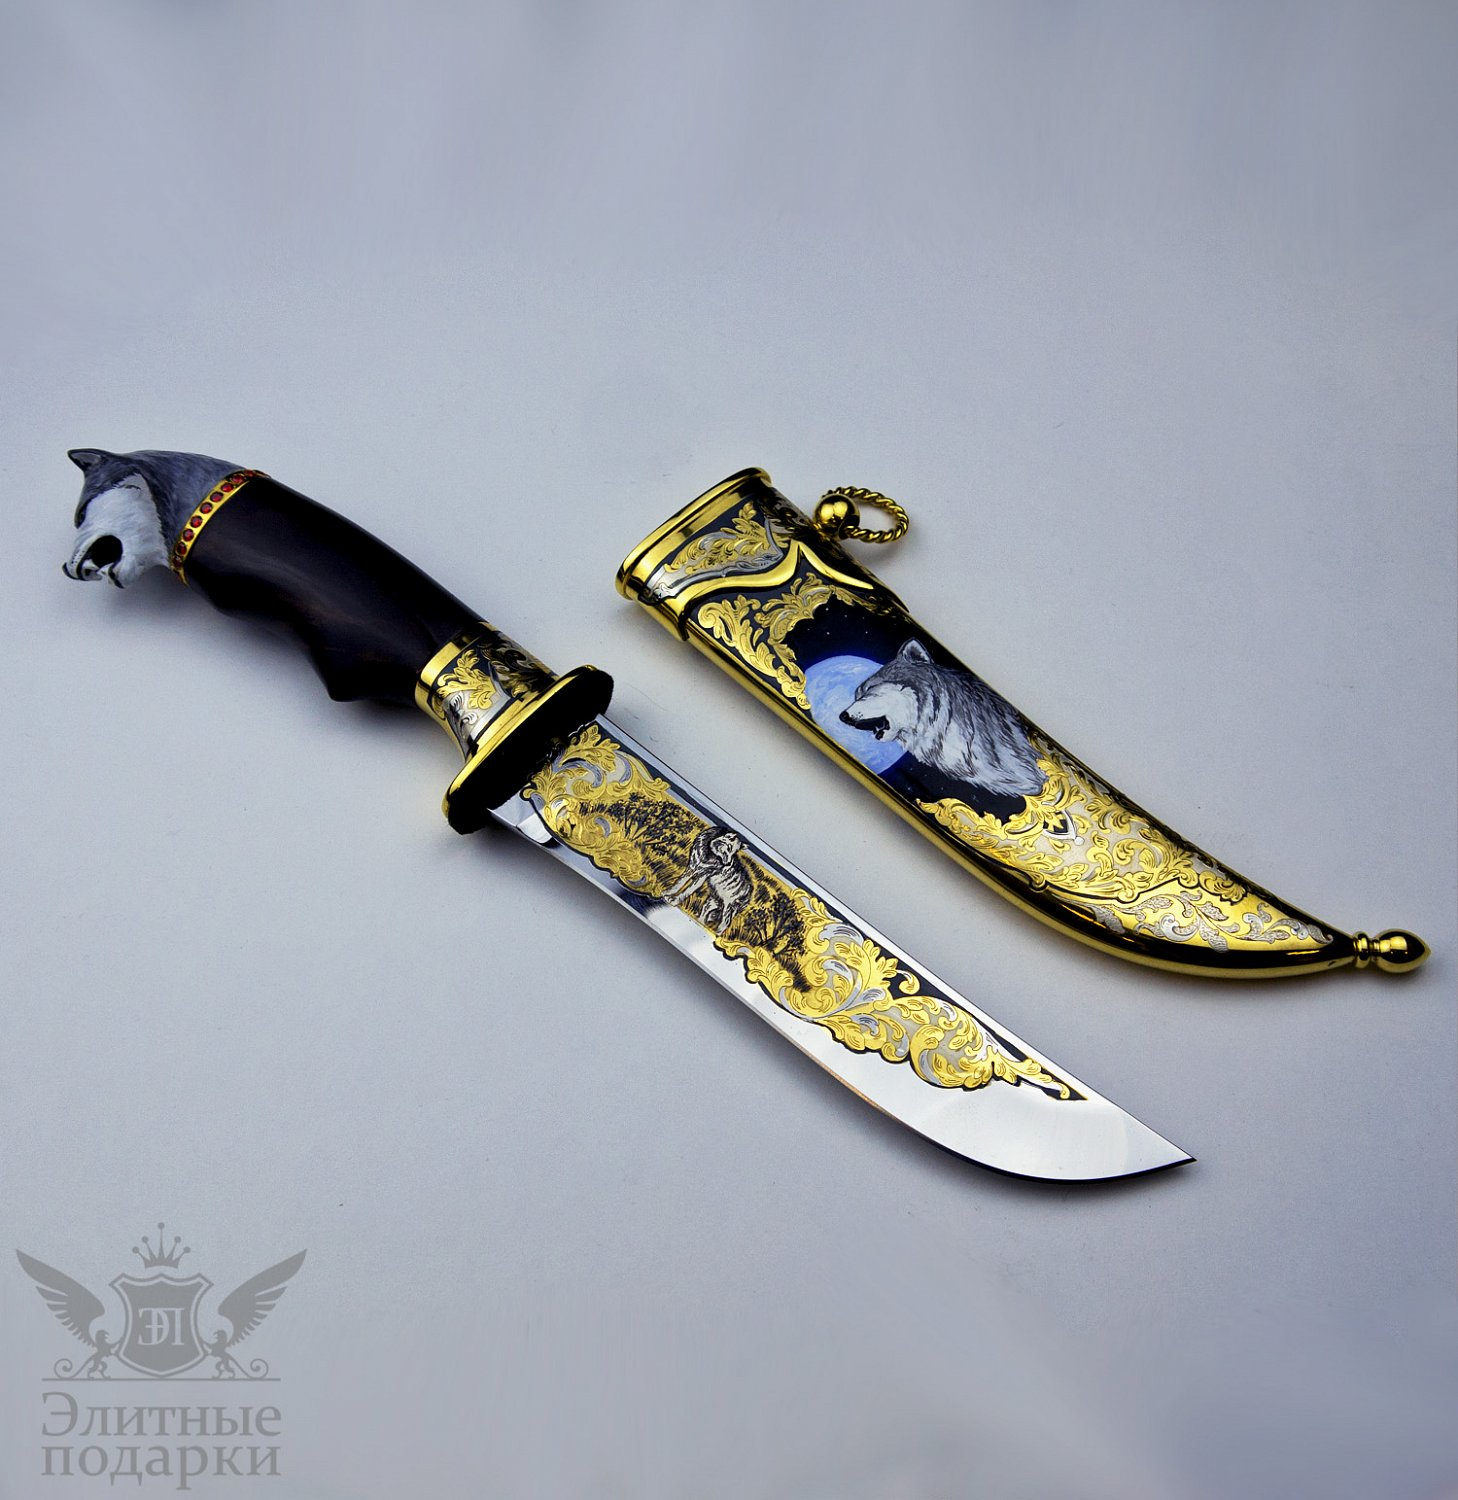 Искусство в стали: Откройте для себя великолепие сувенирного оружия - коллекционные ножи